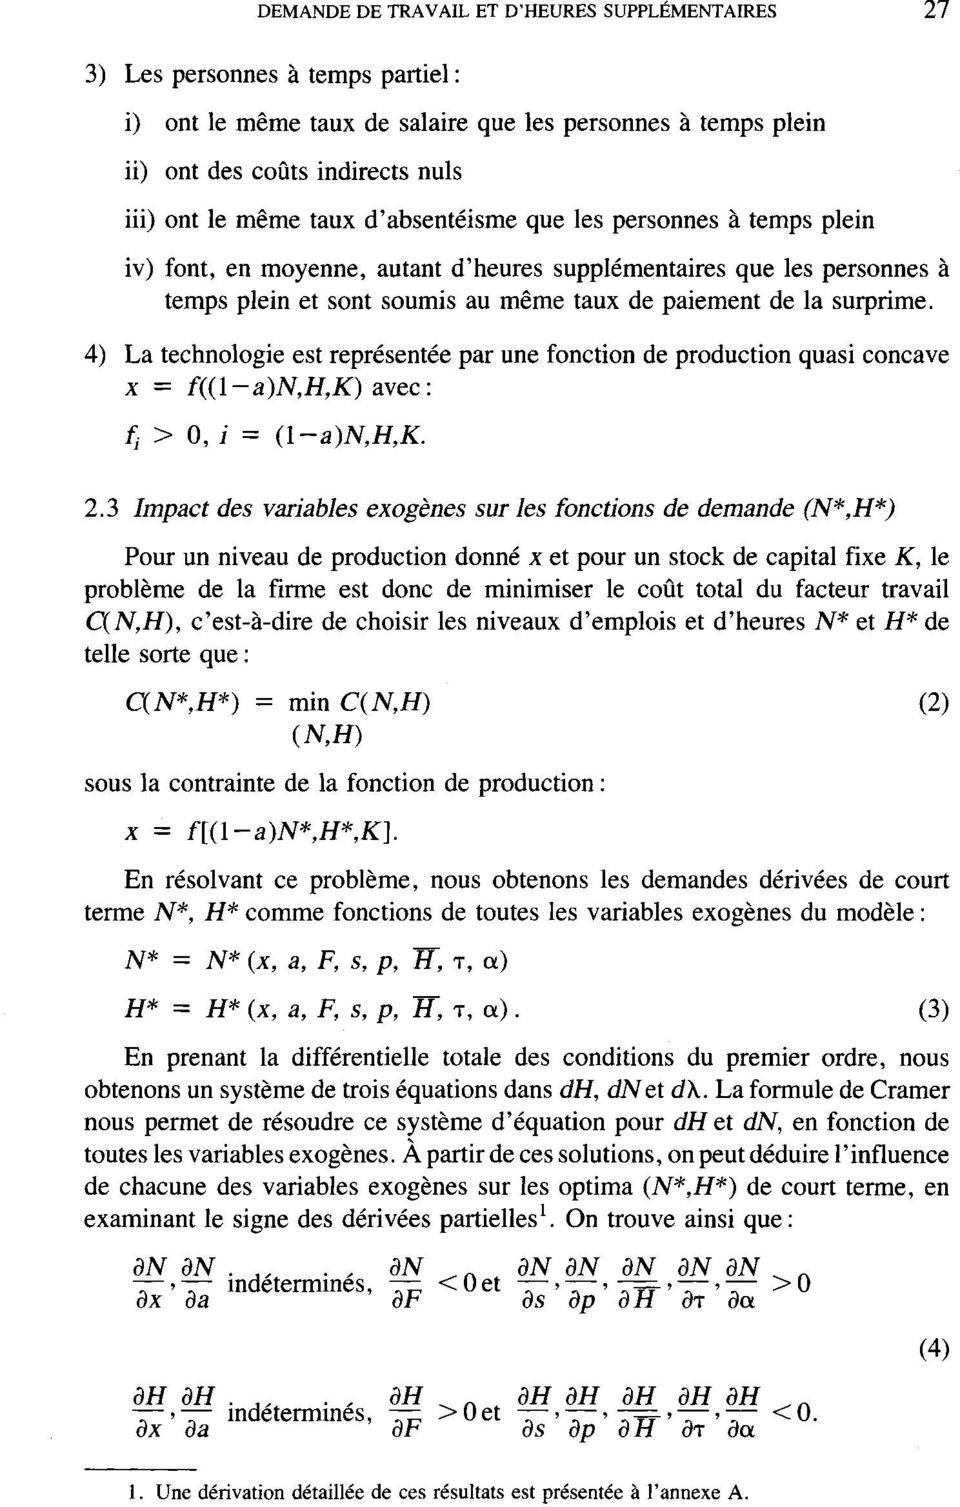 4) La technologie est représentée par une fonction de production quasi concave x = f((l-a)n,h,k) avec: fi > 0, i = (\-a)n,h,k. 2.